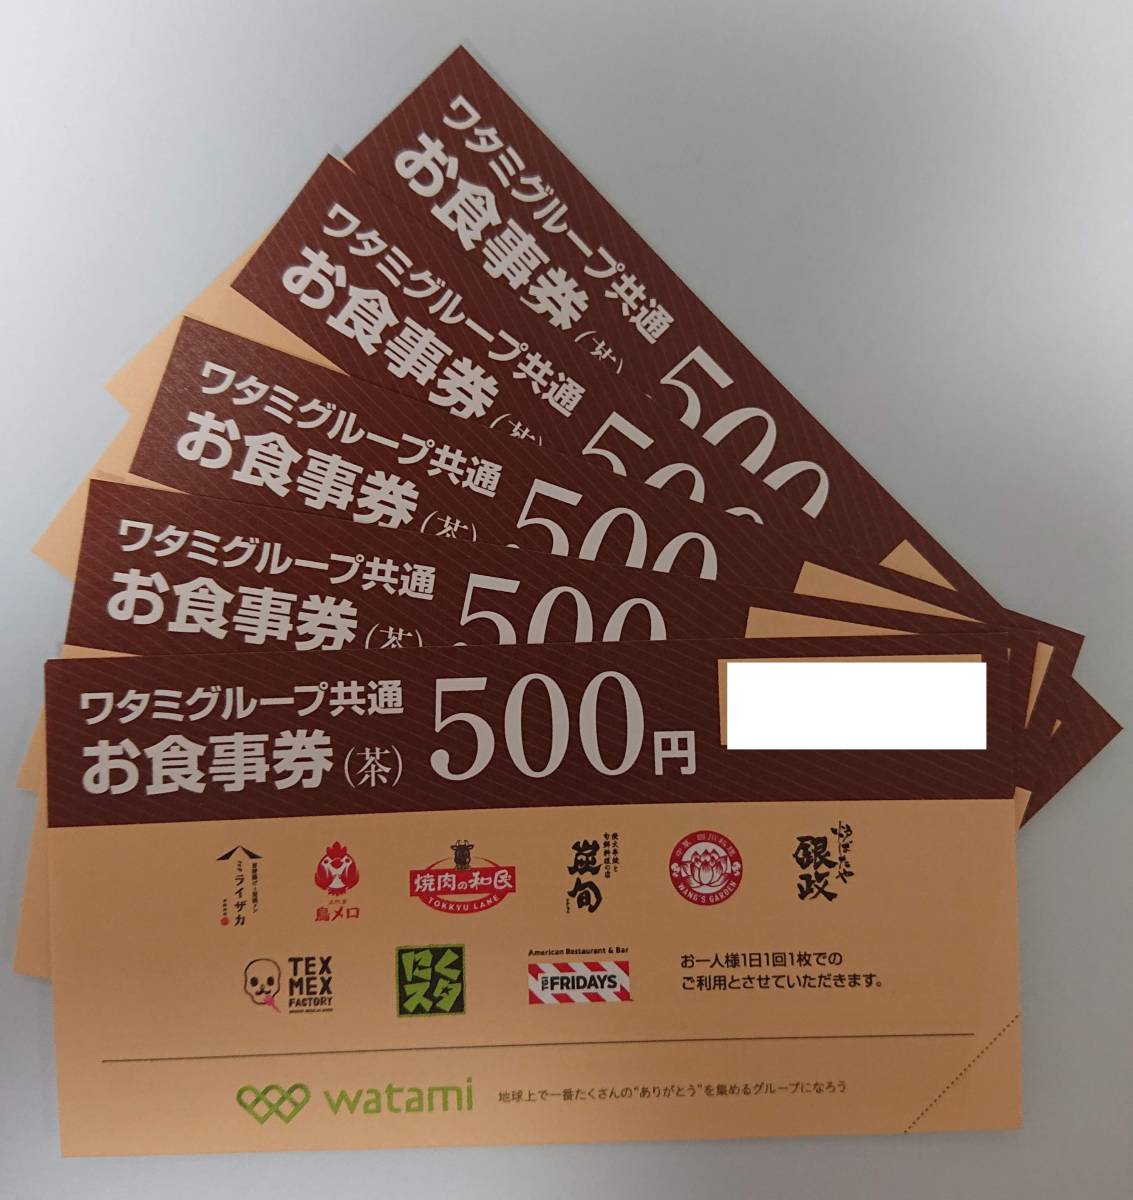 ワタミグループ 共通お食事券 茶 500円×5枚 普通郵便無料(レストラン 